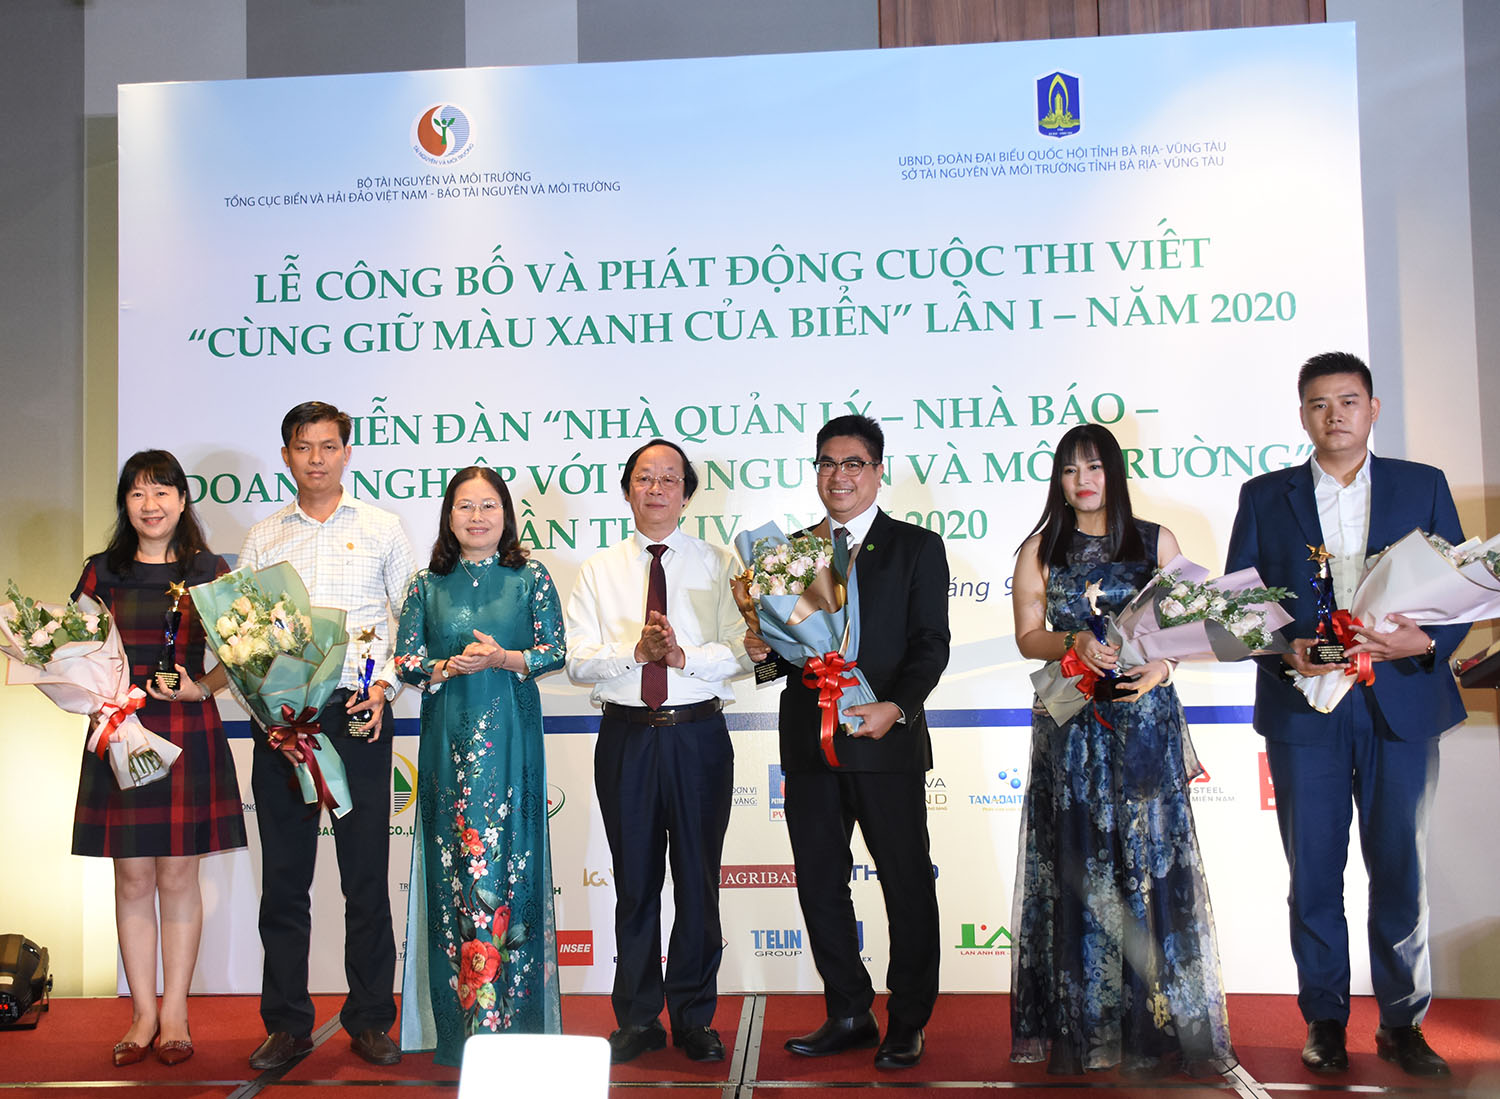 Bà Nguyễn Thị Yến, Phó Bí thư thường trực Tỉnh ủy và ông Võ Tuấn Nhân, Thứ trưởng Bộ TN-MT tặng hoa  cho các DN tại BR-VT làm tốt công tác bảo vệ môi trường, đi đầu trong phong trào chống rác thải nhựa.